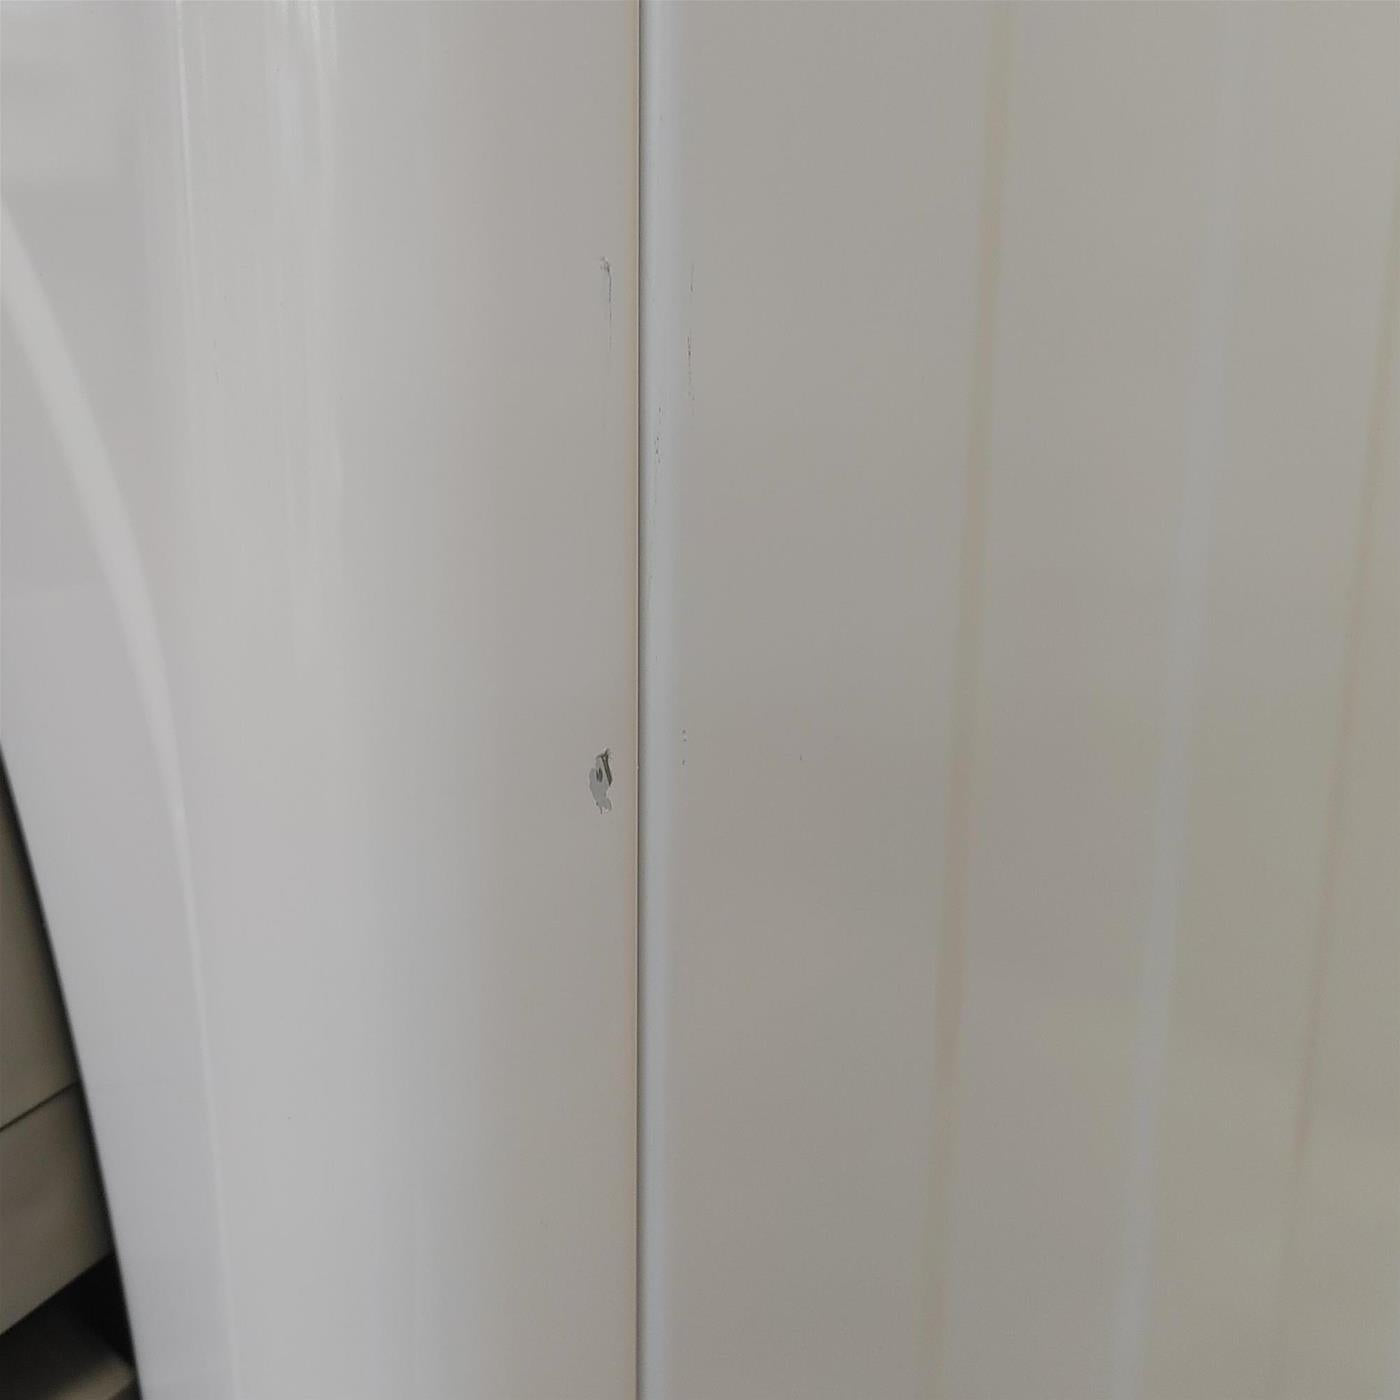 LG RH90V9AVHN asciugatrice Libera installazione Caricamento frontale 9 kg A+++ Bianco